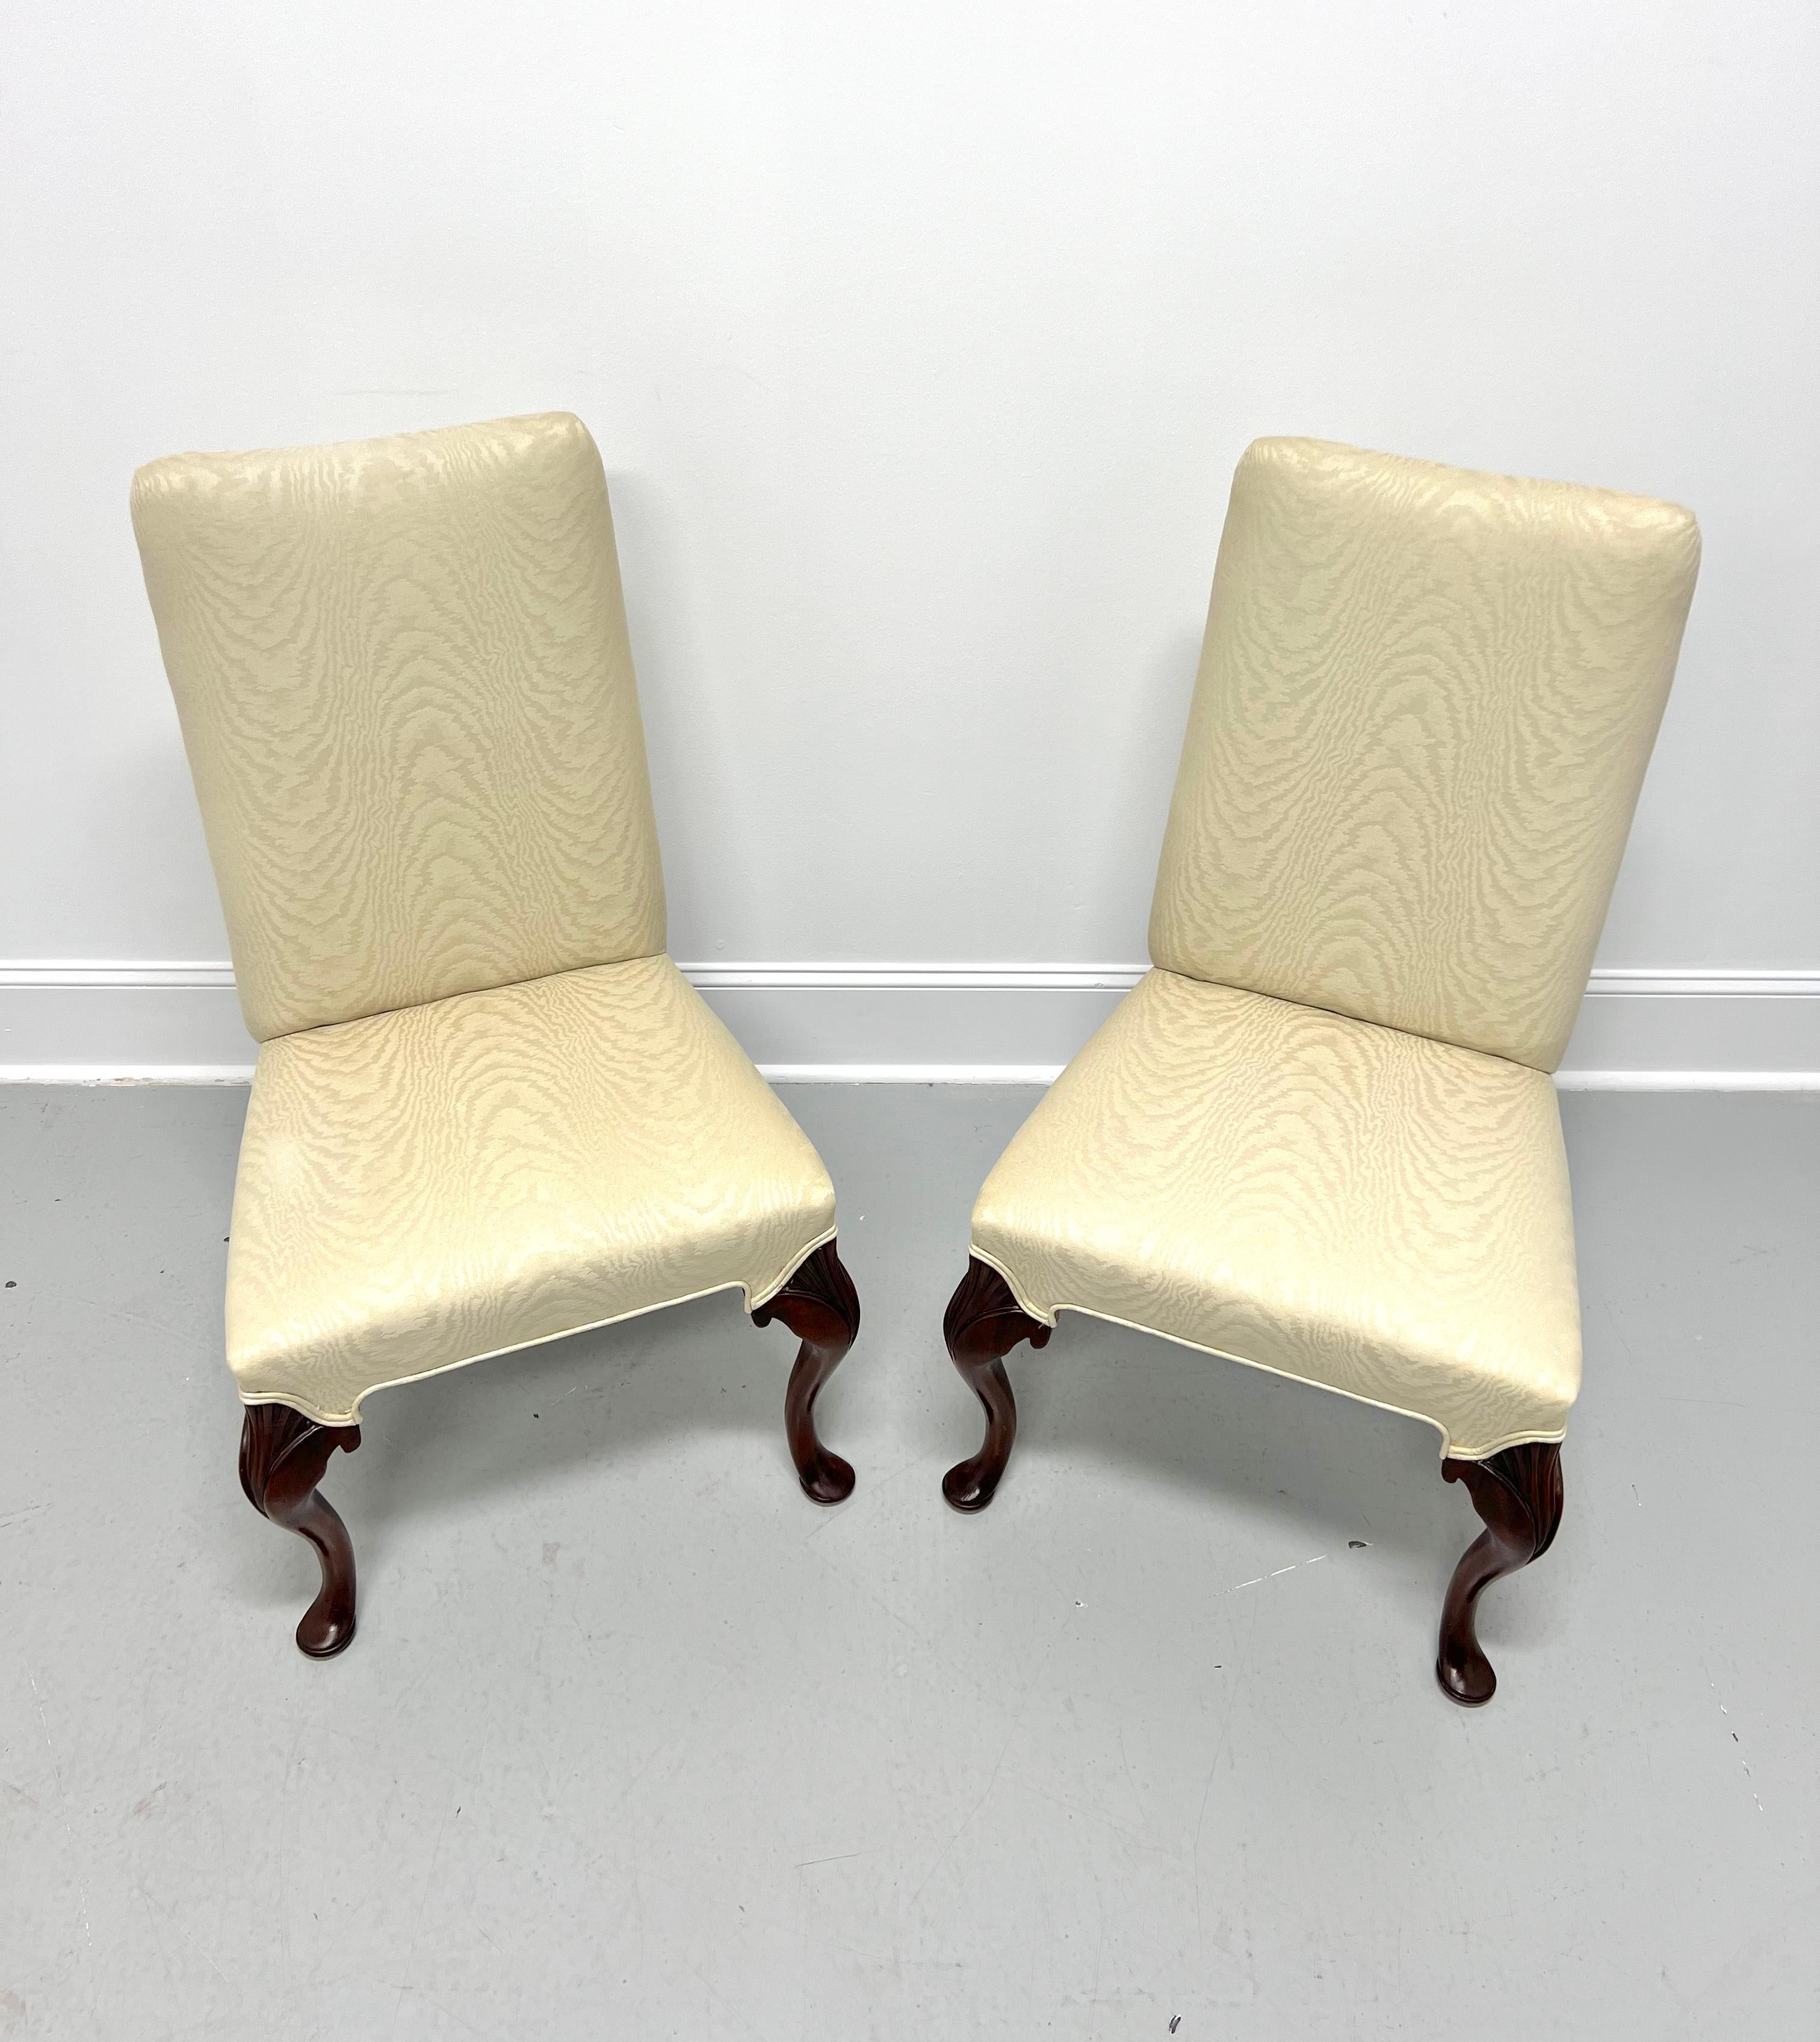 Une paire de chaises Parsons de style provincial français, sans marque, de qualité similaire à Hickory Chair ou John Widdicomb. Montures en acajou à hauts dossiers, genoux sculptés, pieds cabriole et pieds pad. Tapissé d'un tissu à motifs de flammes